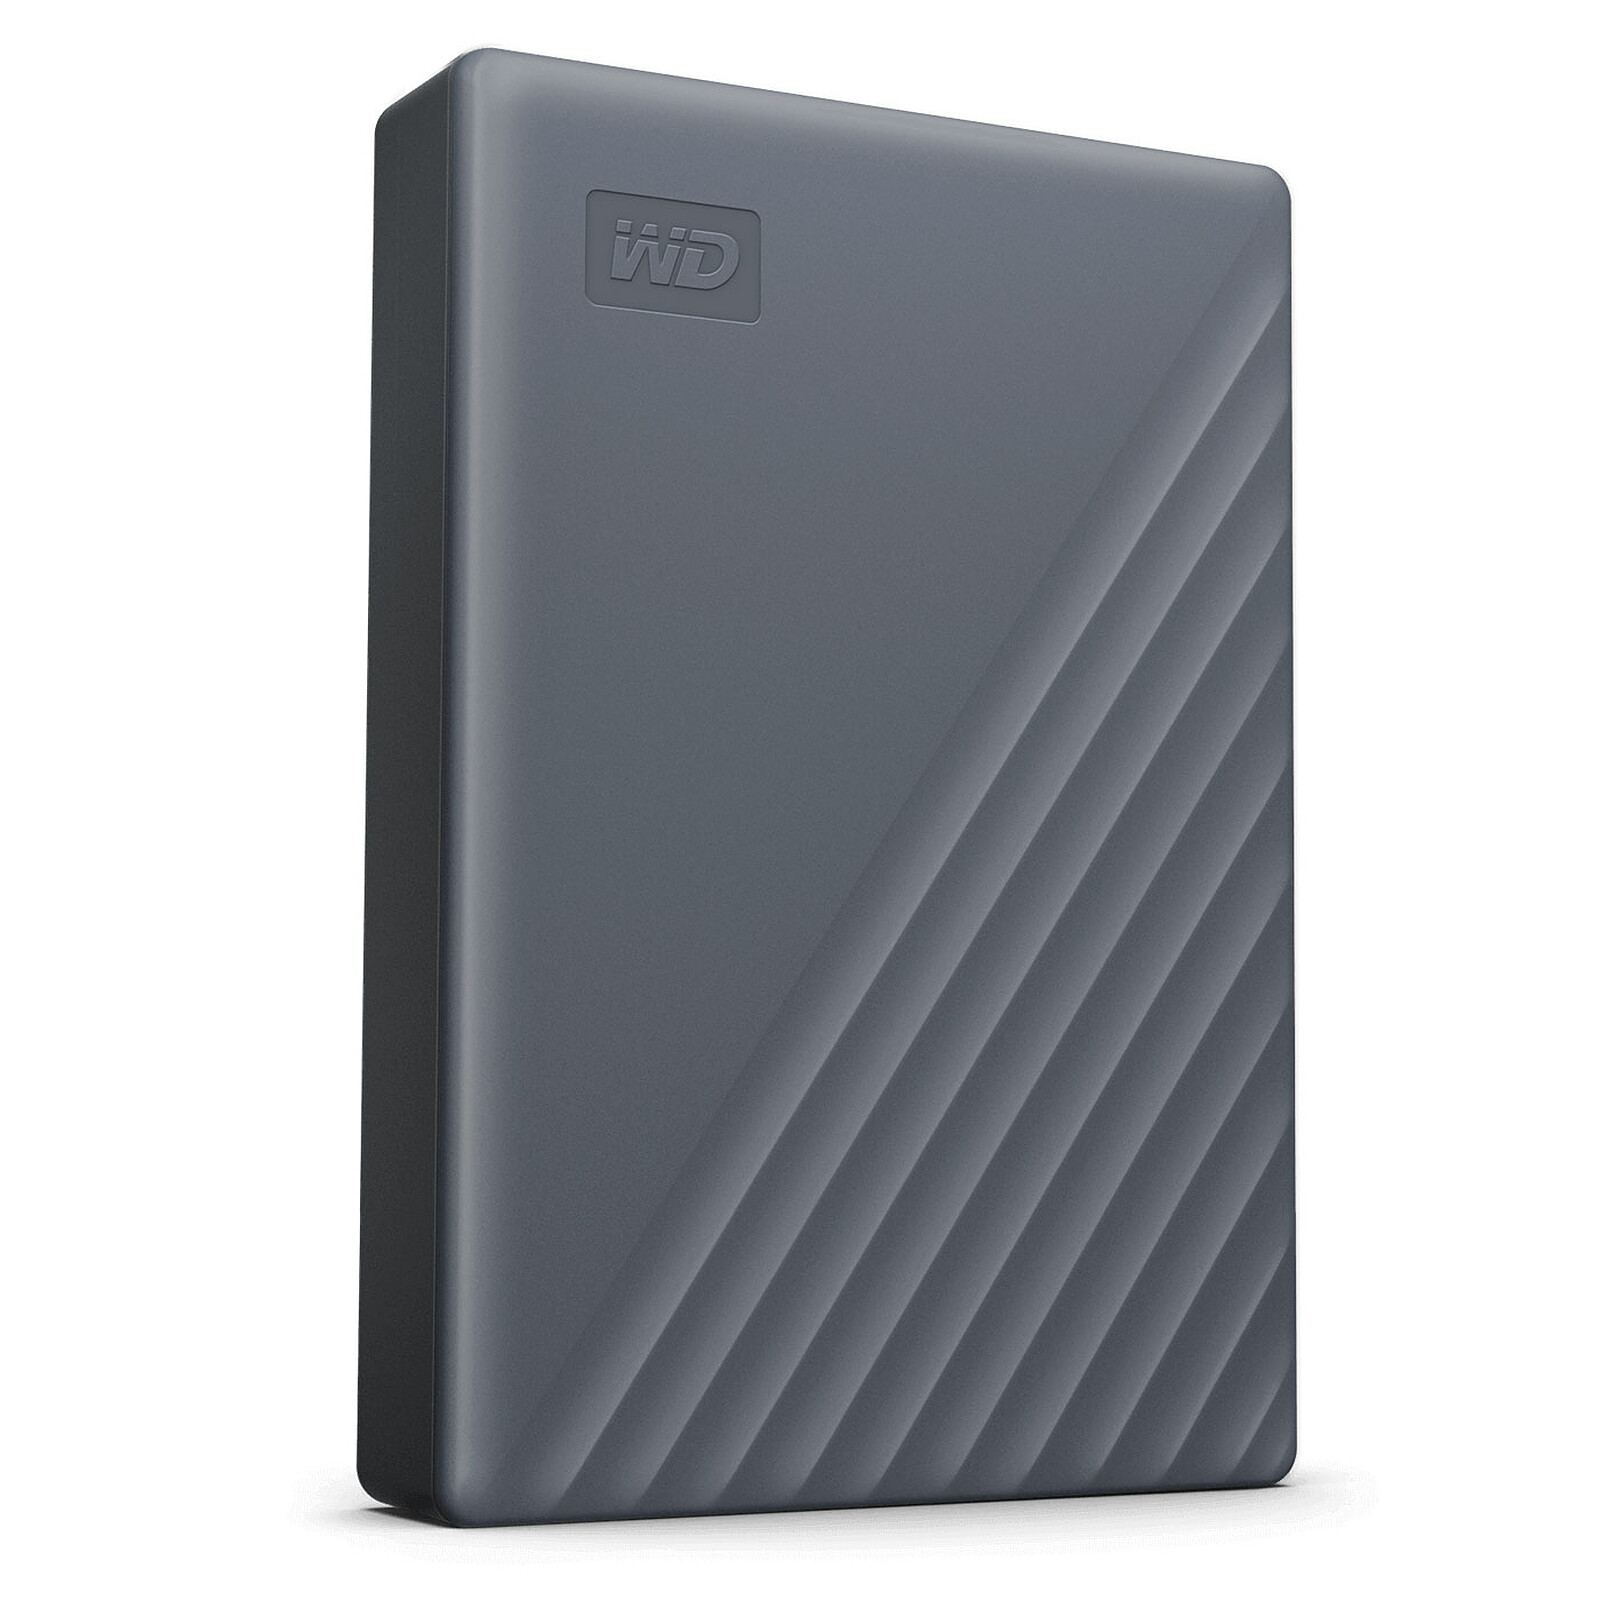 Disque Dur Externe Portable WD 500 Go Elements - USB 3.0 - Noir